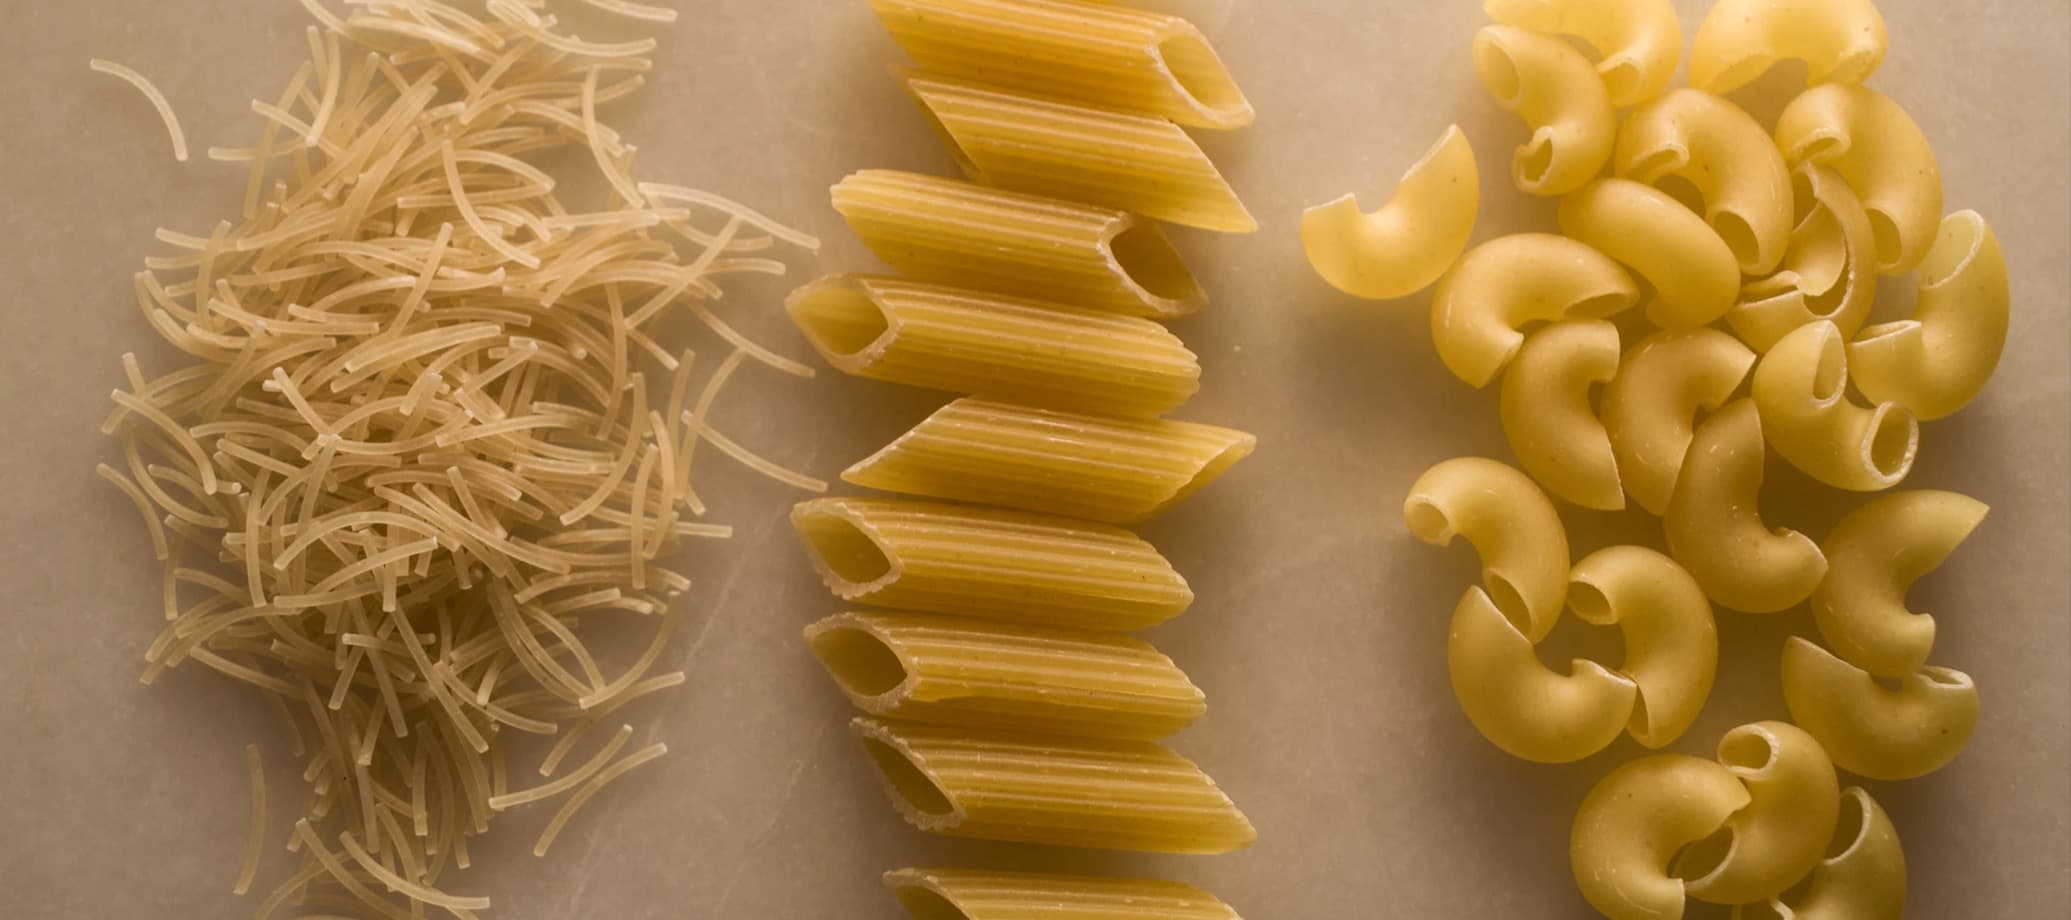 Фото новости: "Производитель «Роллтона» выпустил макароны с оливковым маслом"